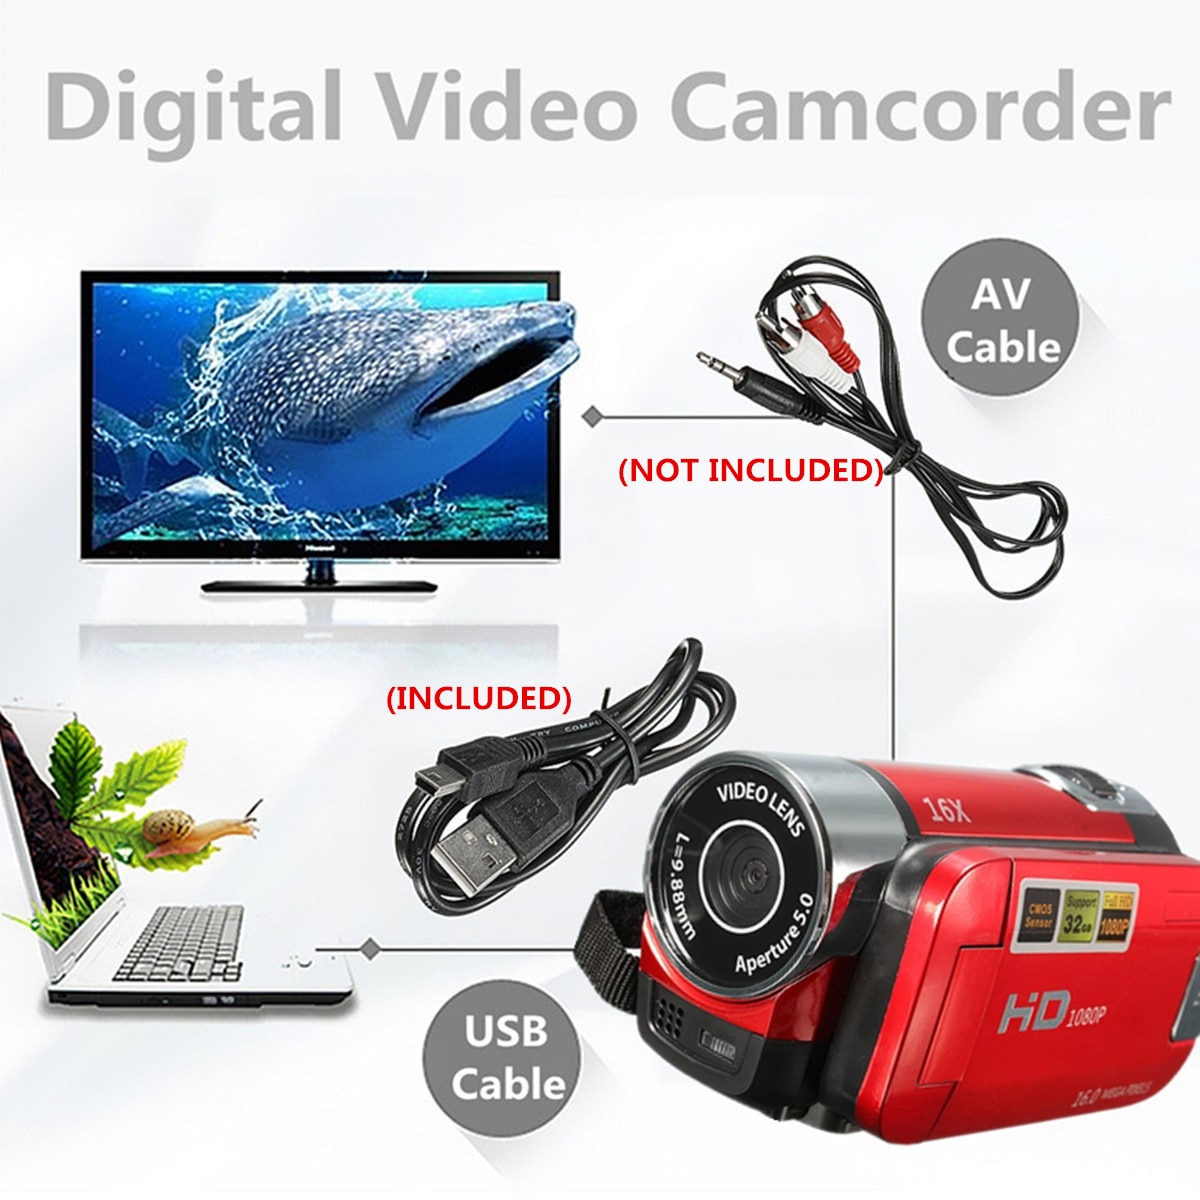 รูปภาพรายละเอียดของ ดิจิตอลกล้องวิดีโอ กล้องวีดีโอกล้องถ่ายรูป ระบบตัวเลขความละเอียดสูงกล้องถ่ายวิดีโอกล้อง DV 16X Video Camera 16 Million Pixels HD 1080P Digitale Video Camcorder DV 16MP 2.7'' LCD Screen Toccare Schermo 16X Zoom Camera